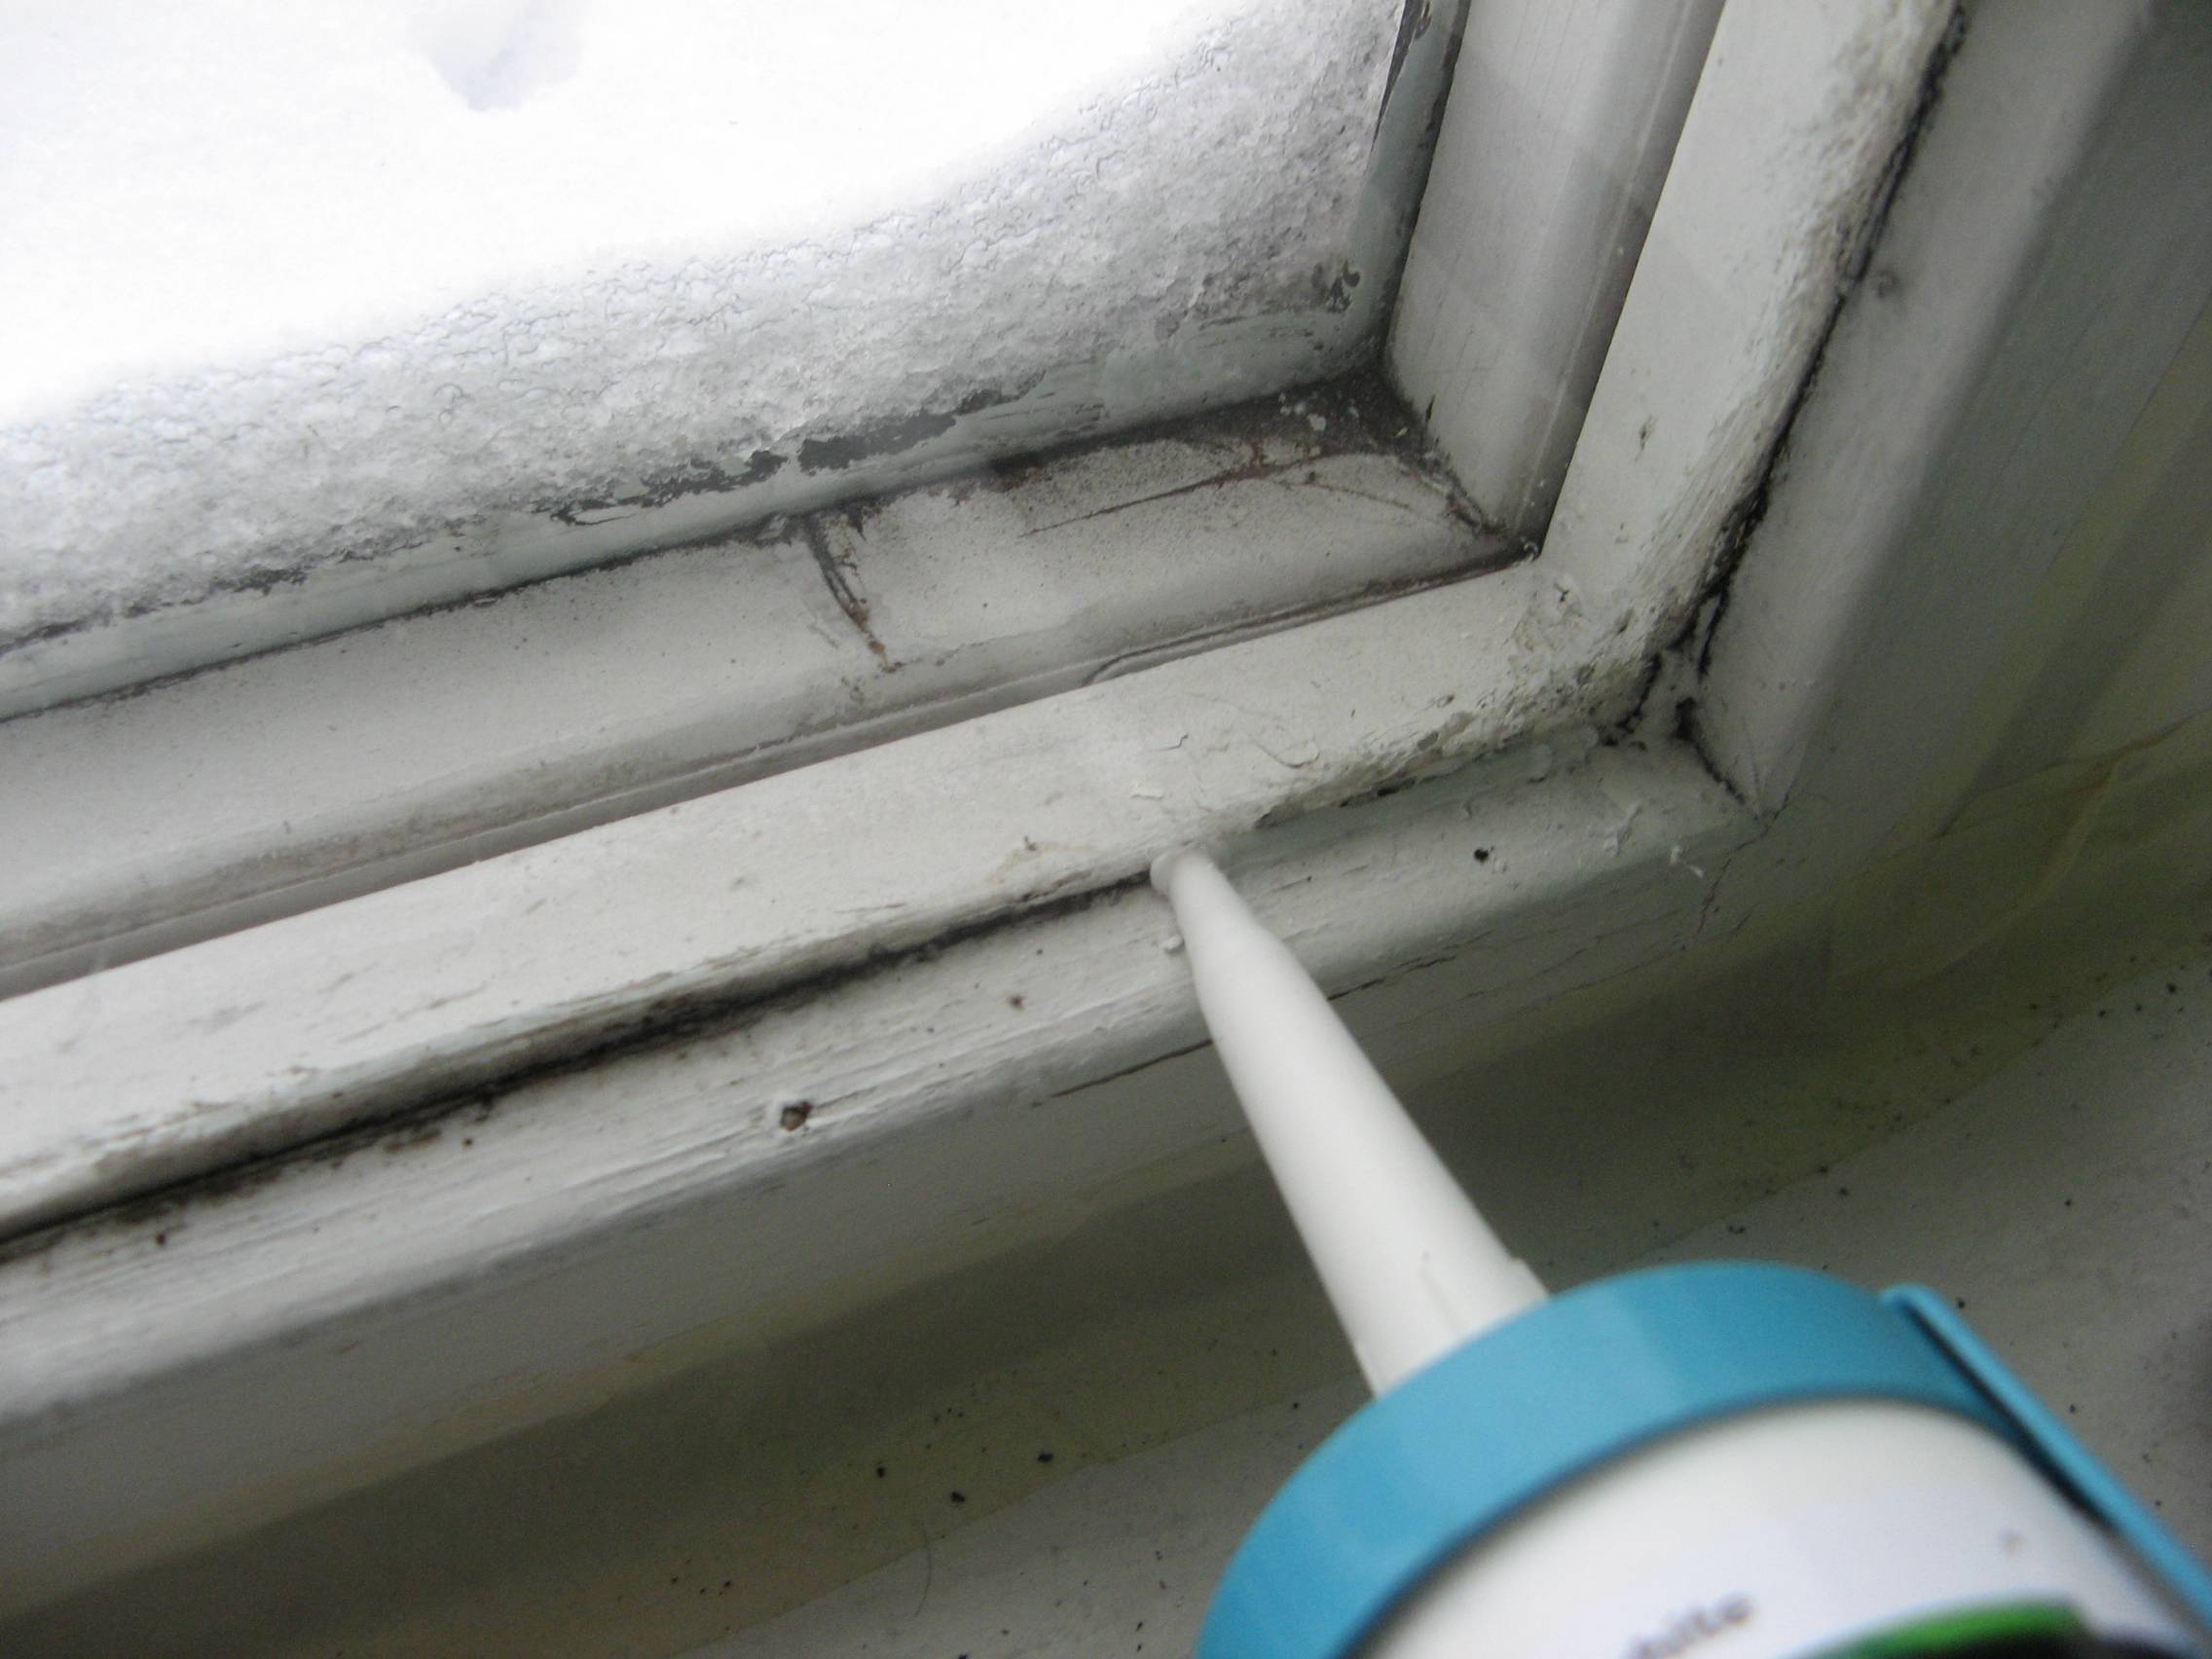 Как по-быстрому утеплить пластиковые окна на зиму, чтобы не дуло: делюсь схемой